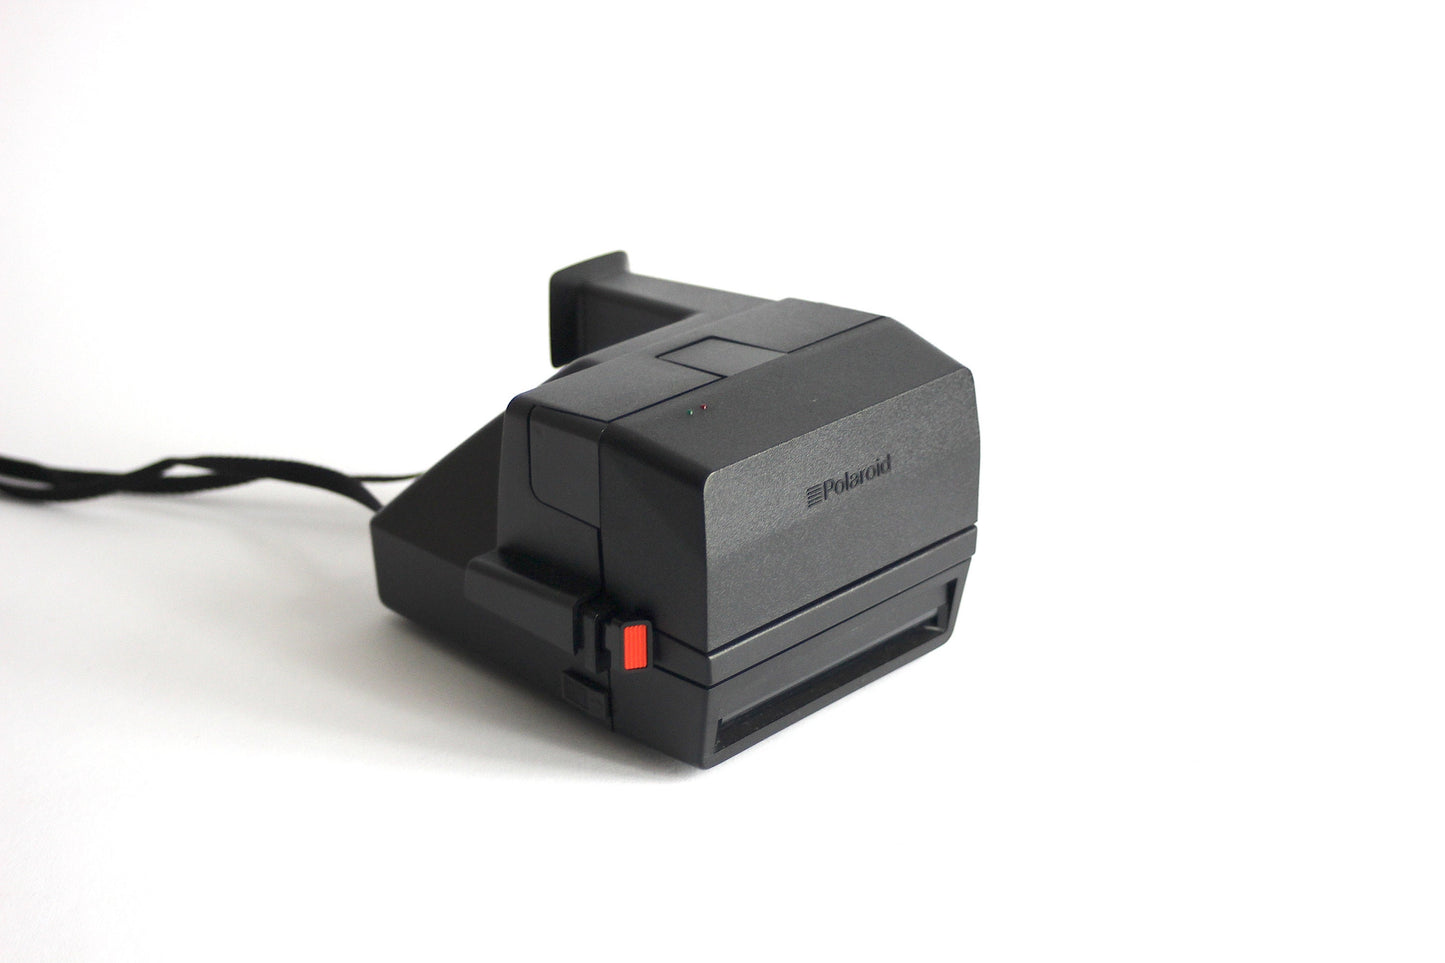 Polaroid OneStep Flash camera - Includes original box and original instructions book - 1980s